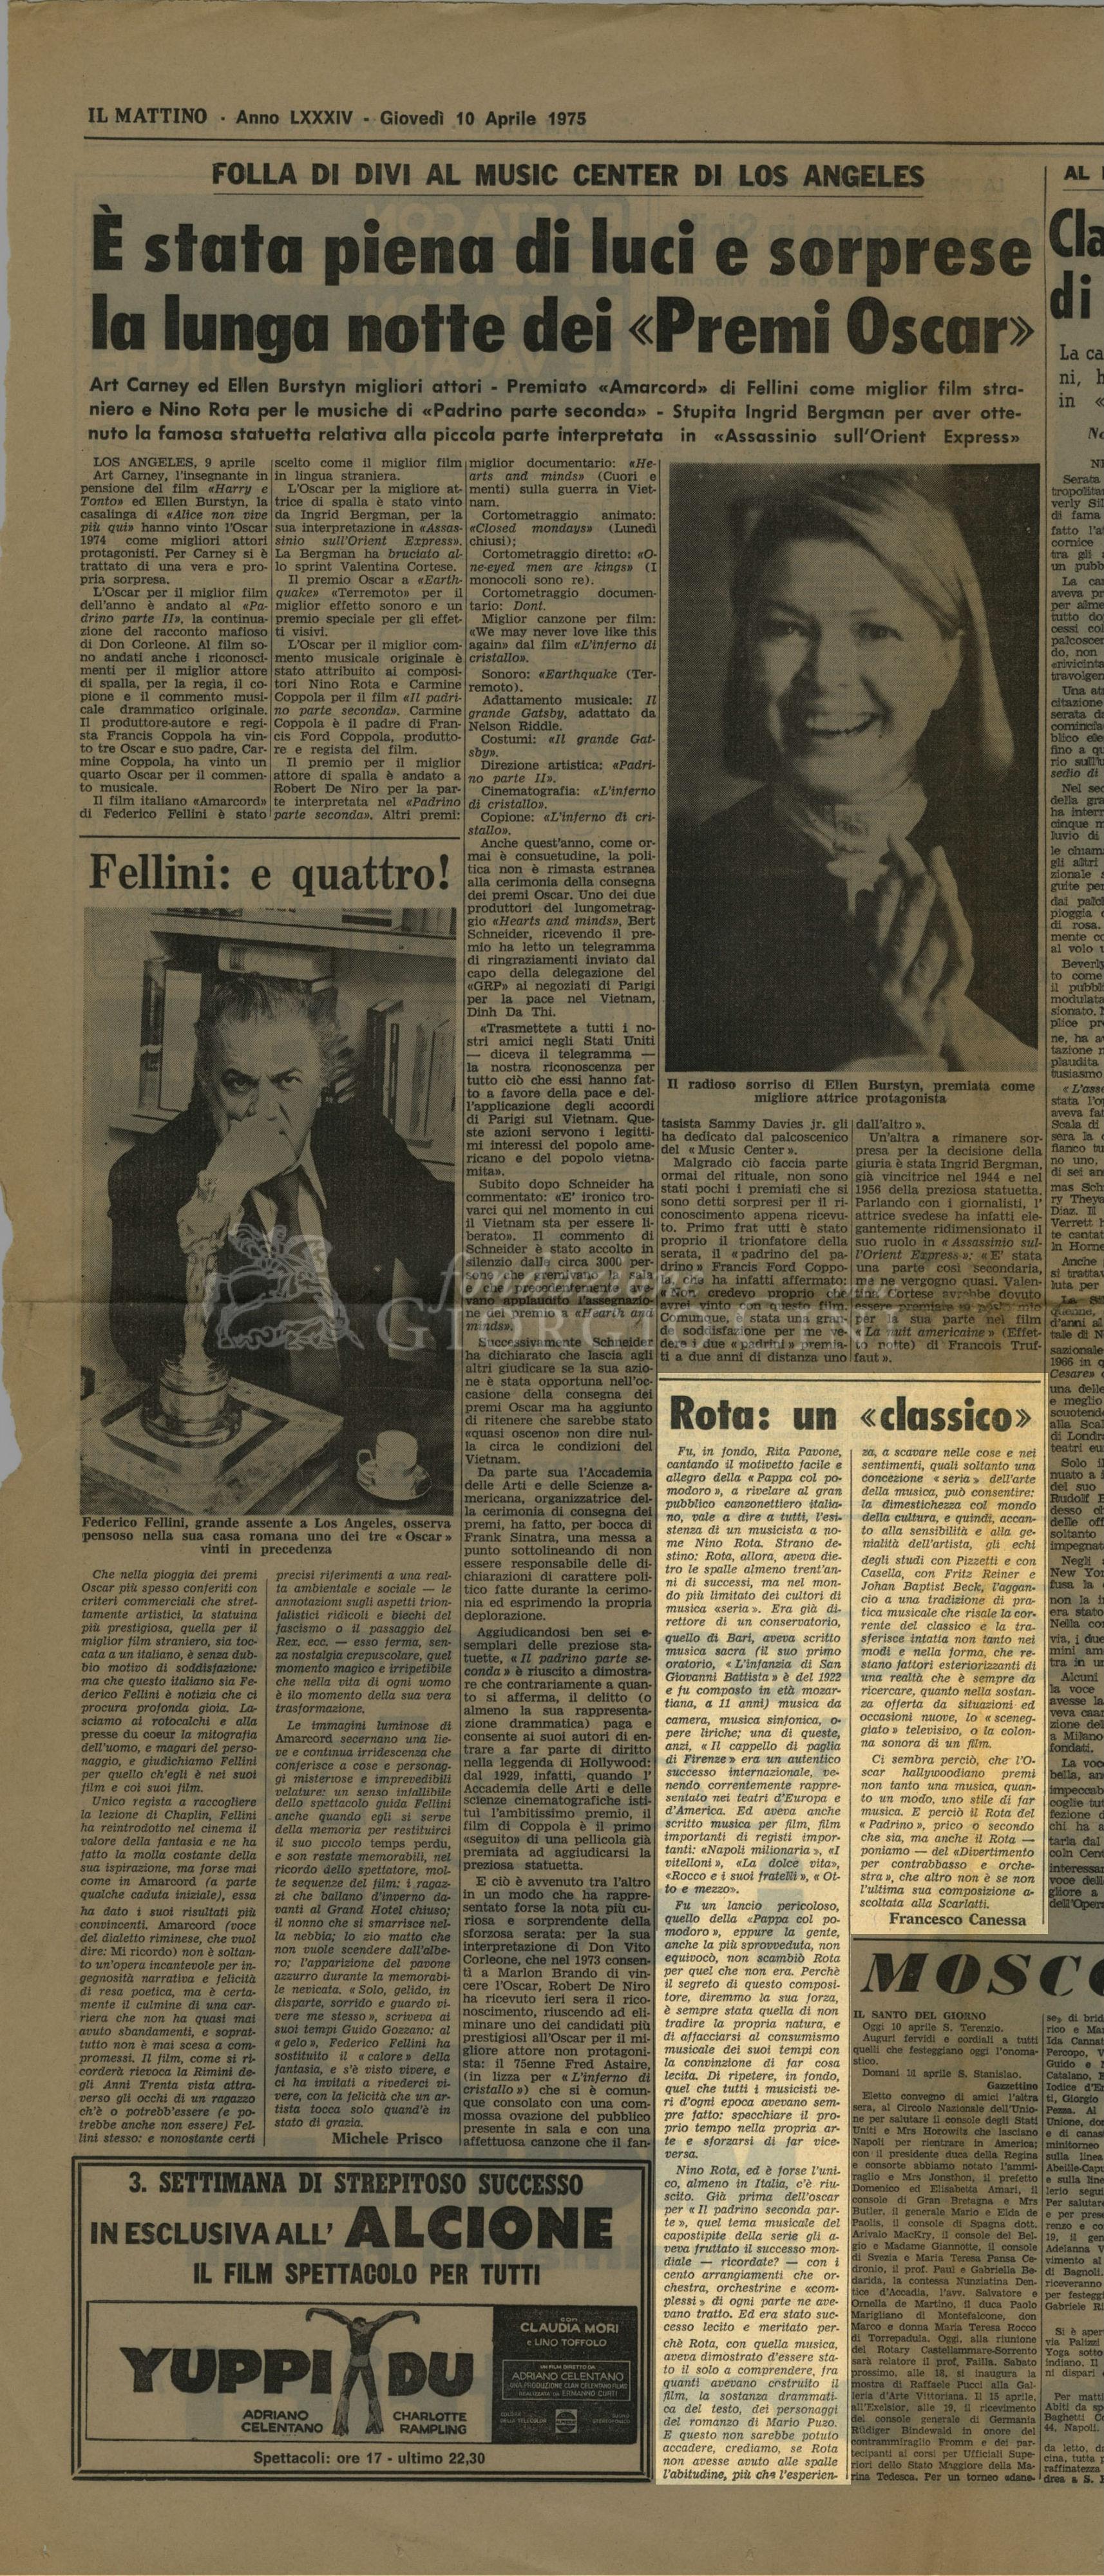 Rota: un 'classico'
				 10 aprile 1975